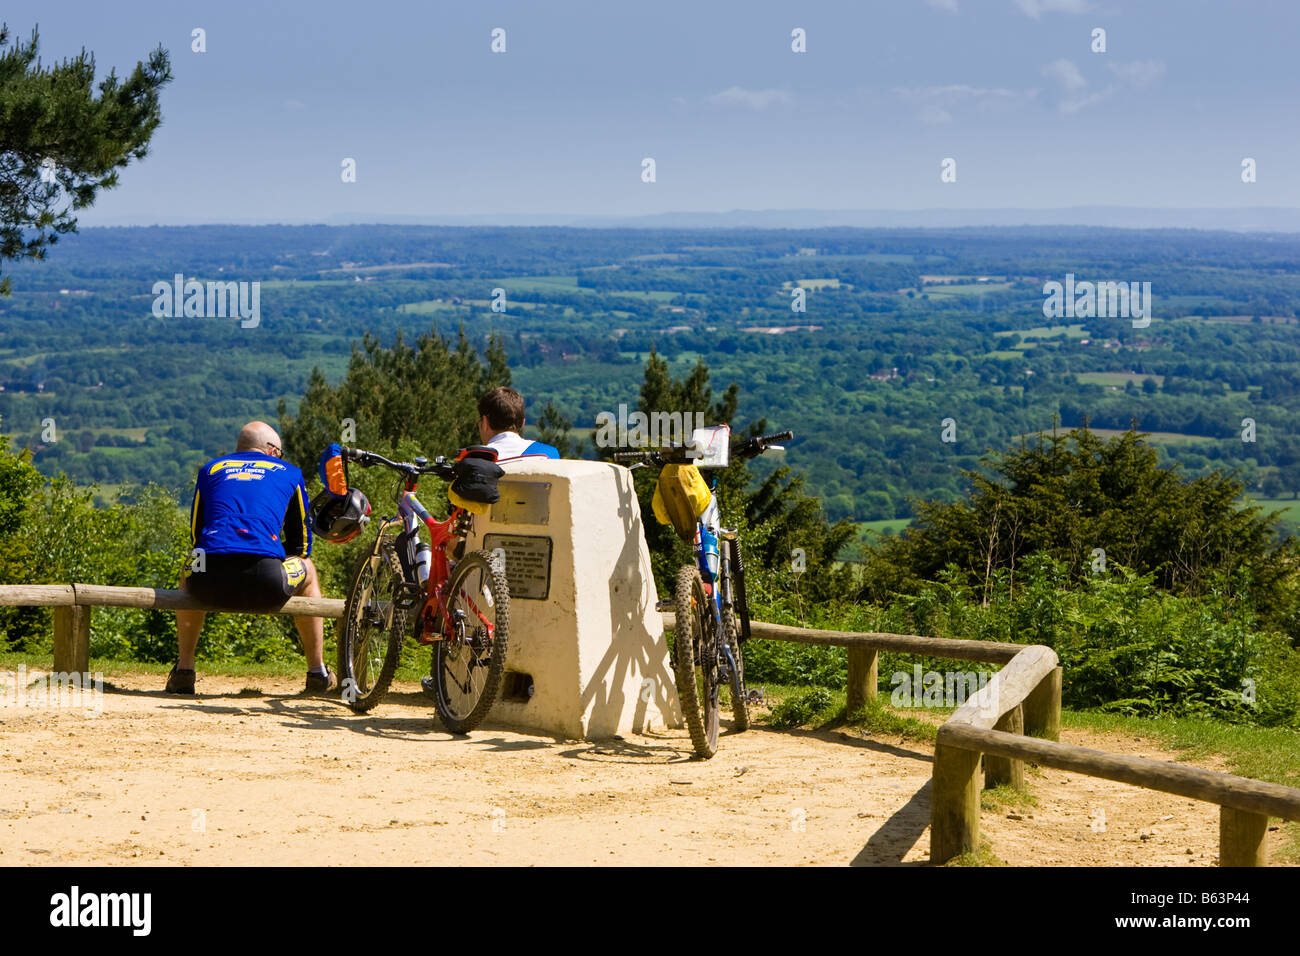 Deux cyclistes à profiter de la vue sur le Weald et South Downs à la campagne haut de Leith Hill, Surrey, Angleterre, Royaume-Uni Banque D'Images